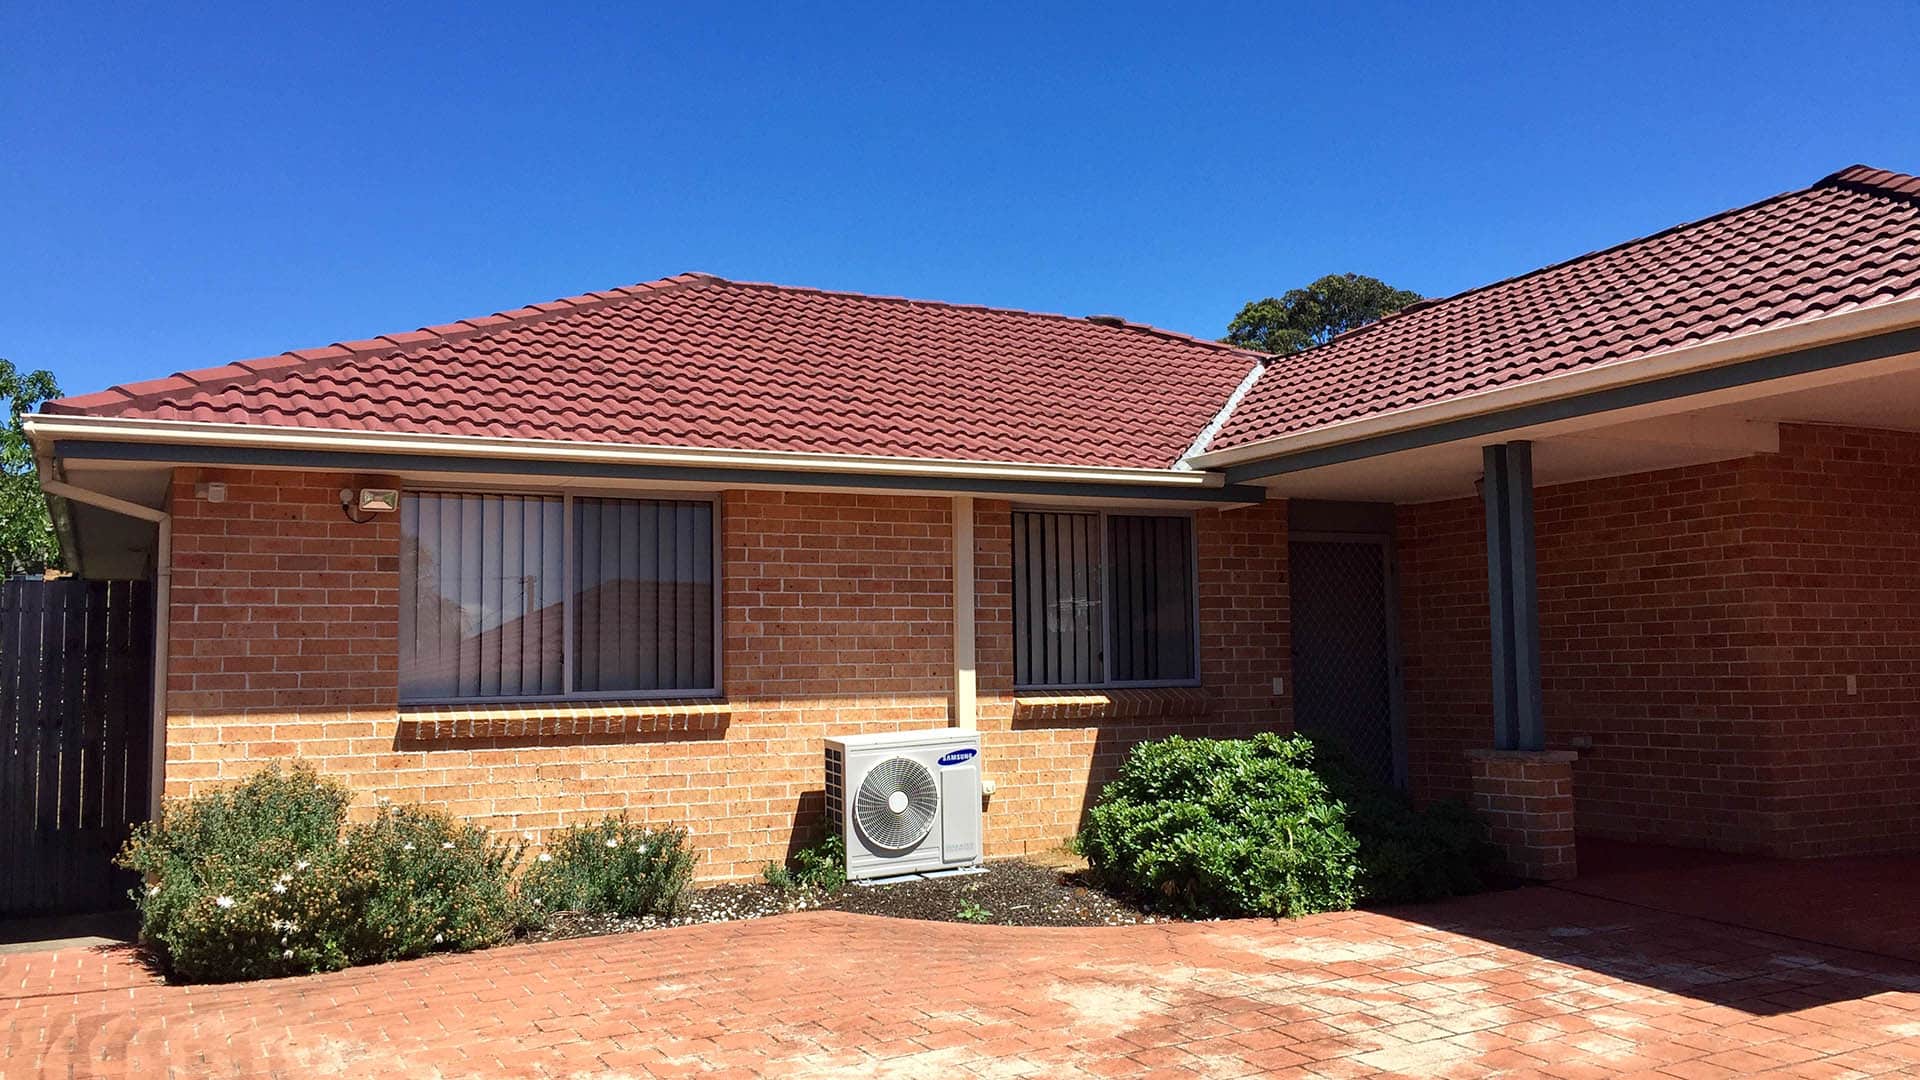 Front view of single story brick home Narraweena 3